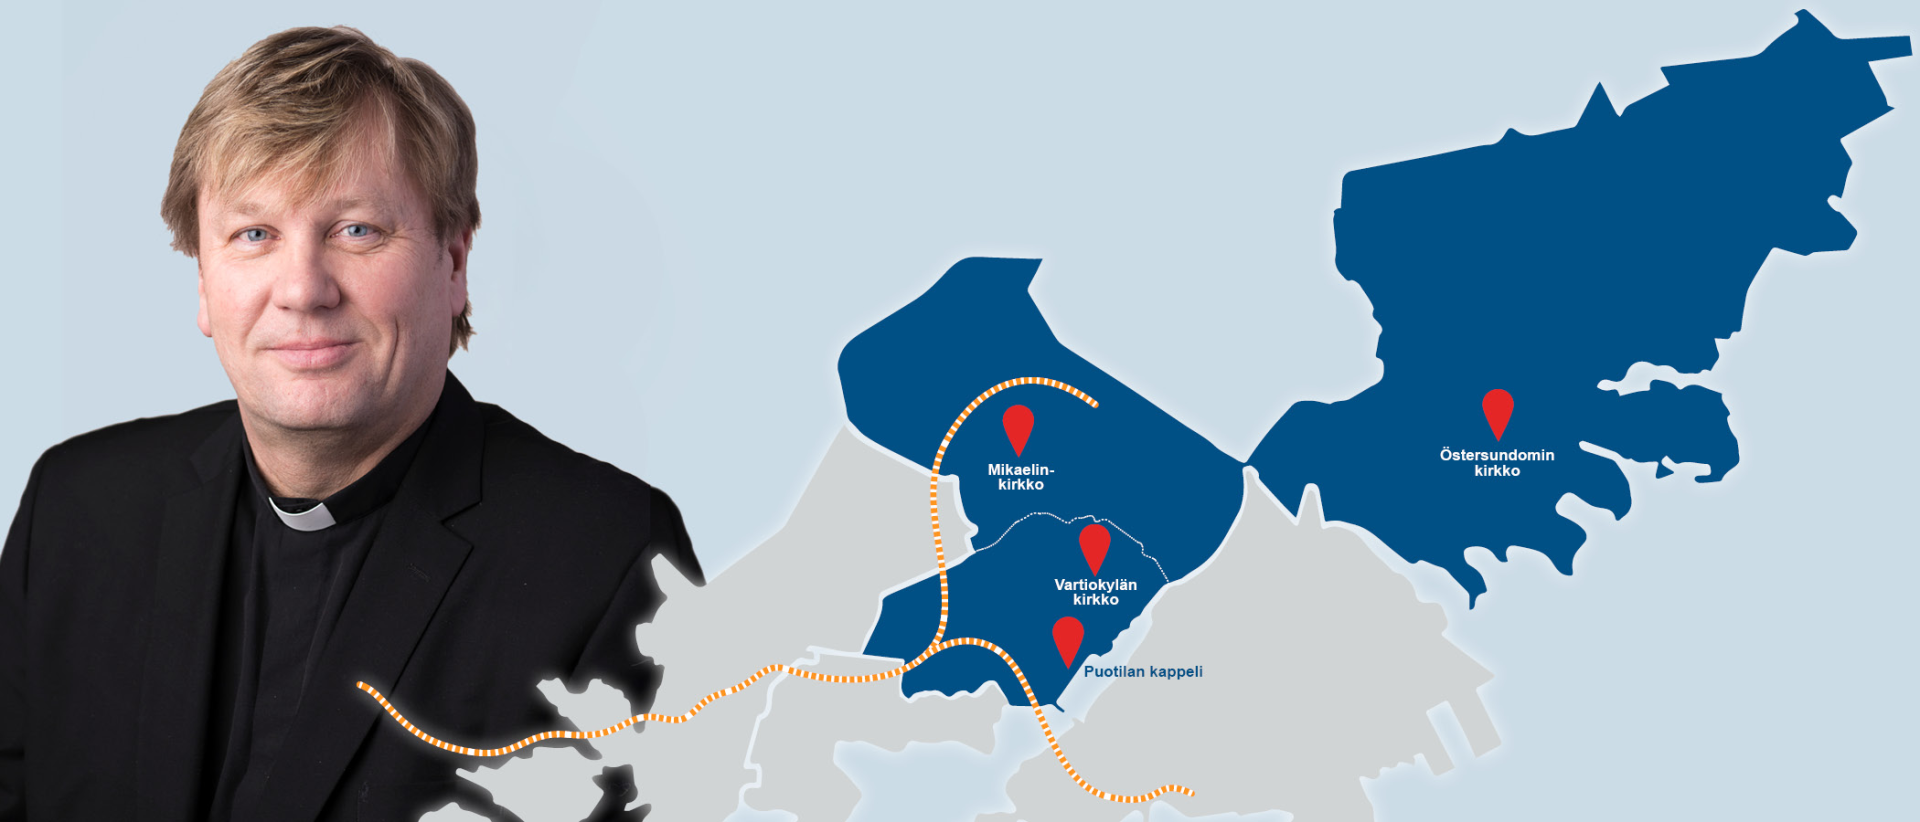 Kirkkoherra Jukka pakarisen kuva ja kartta uudesta Mikaelin seurakunnan alueesta sinisellä pohjalla